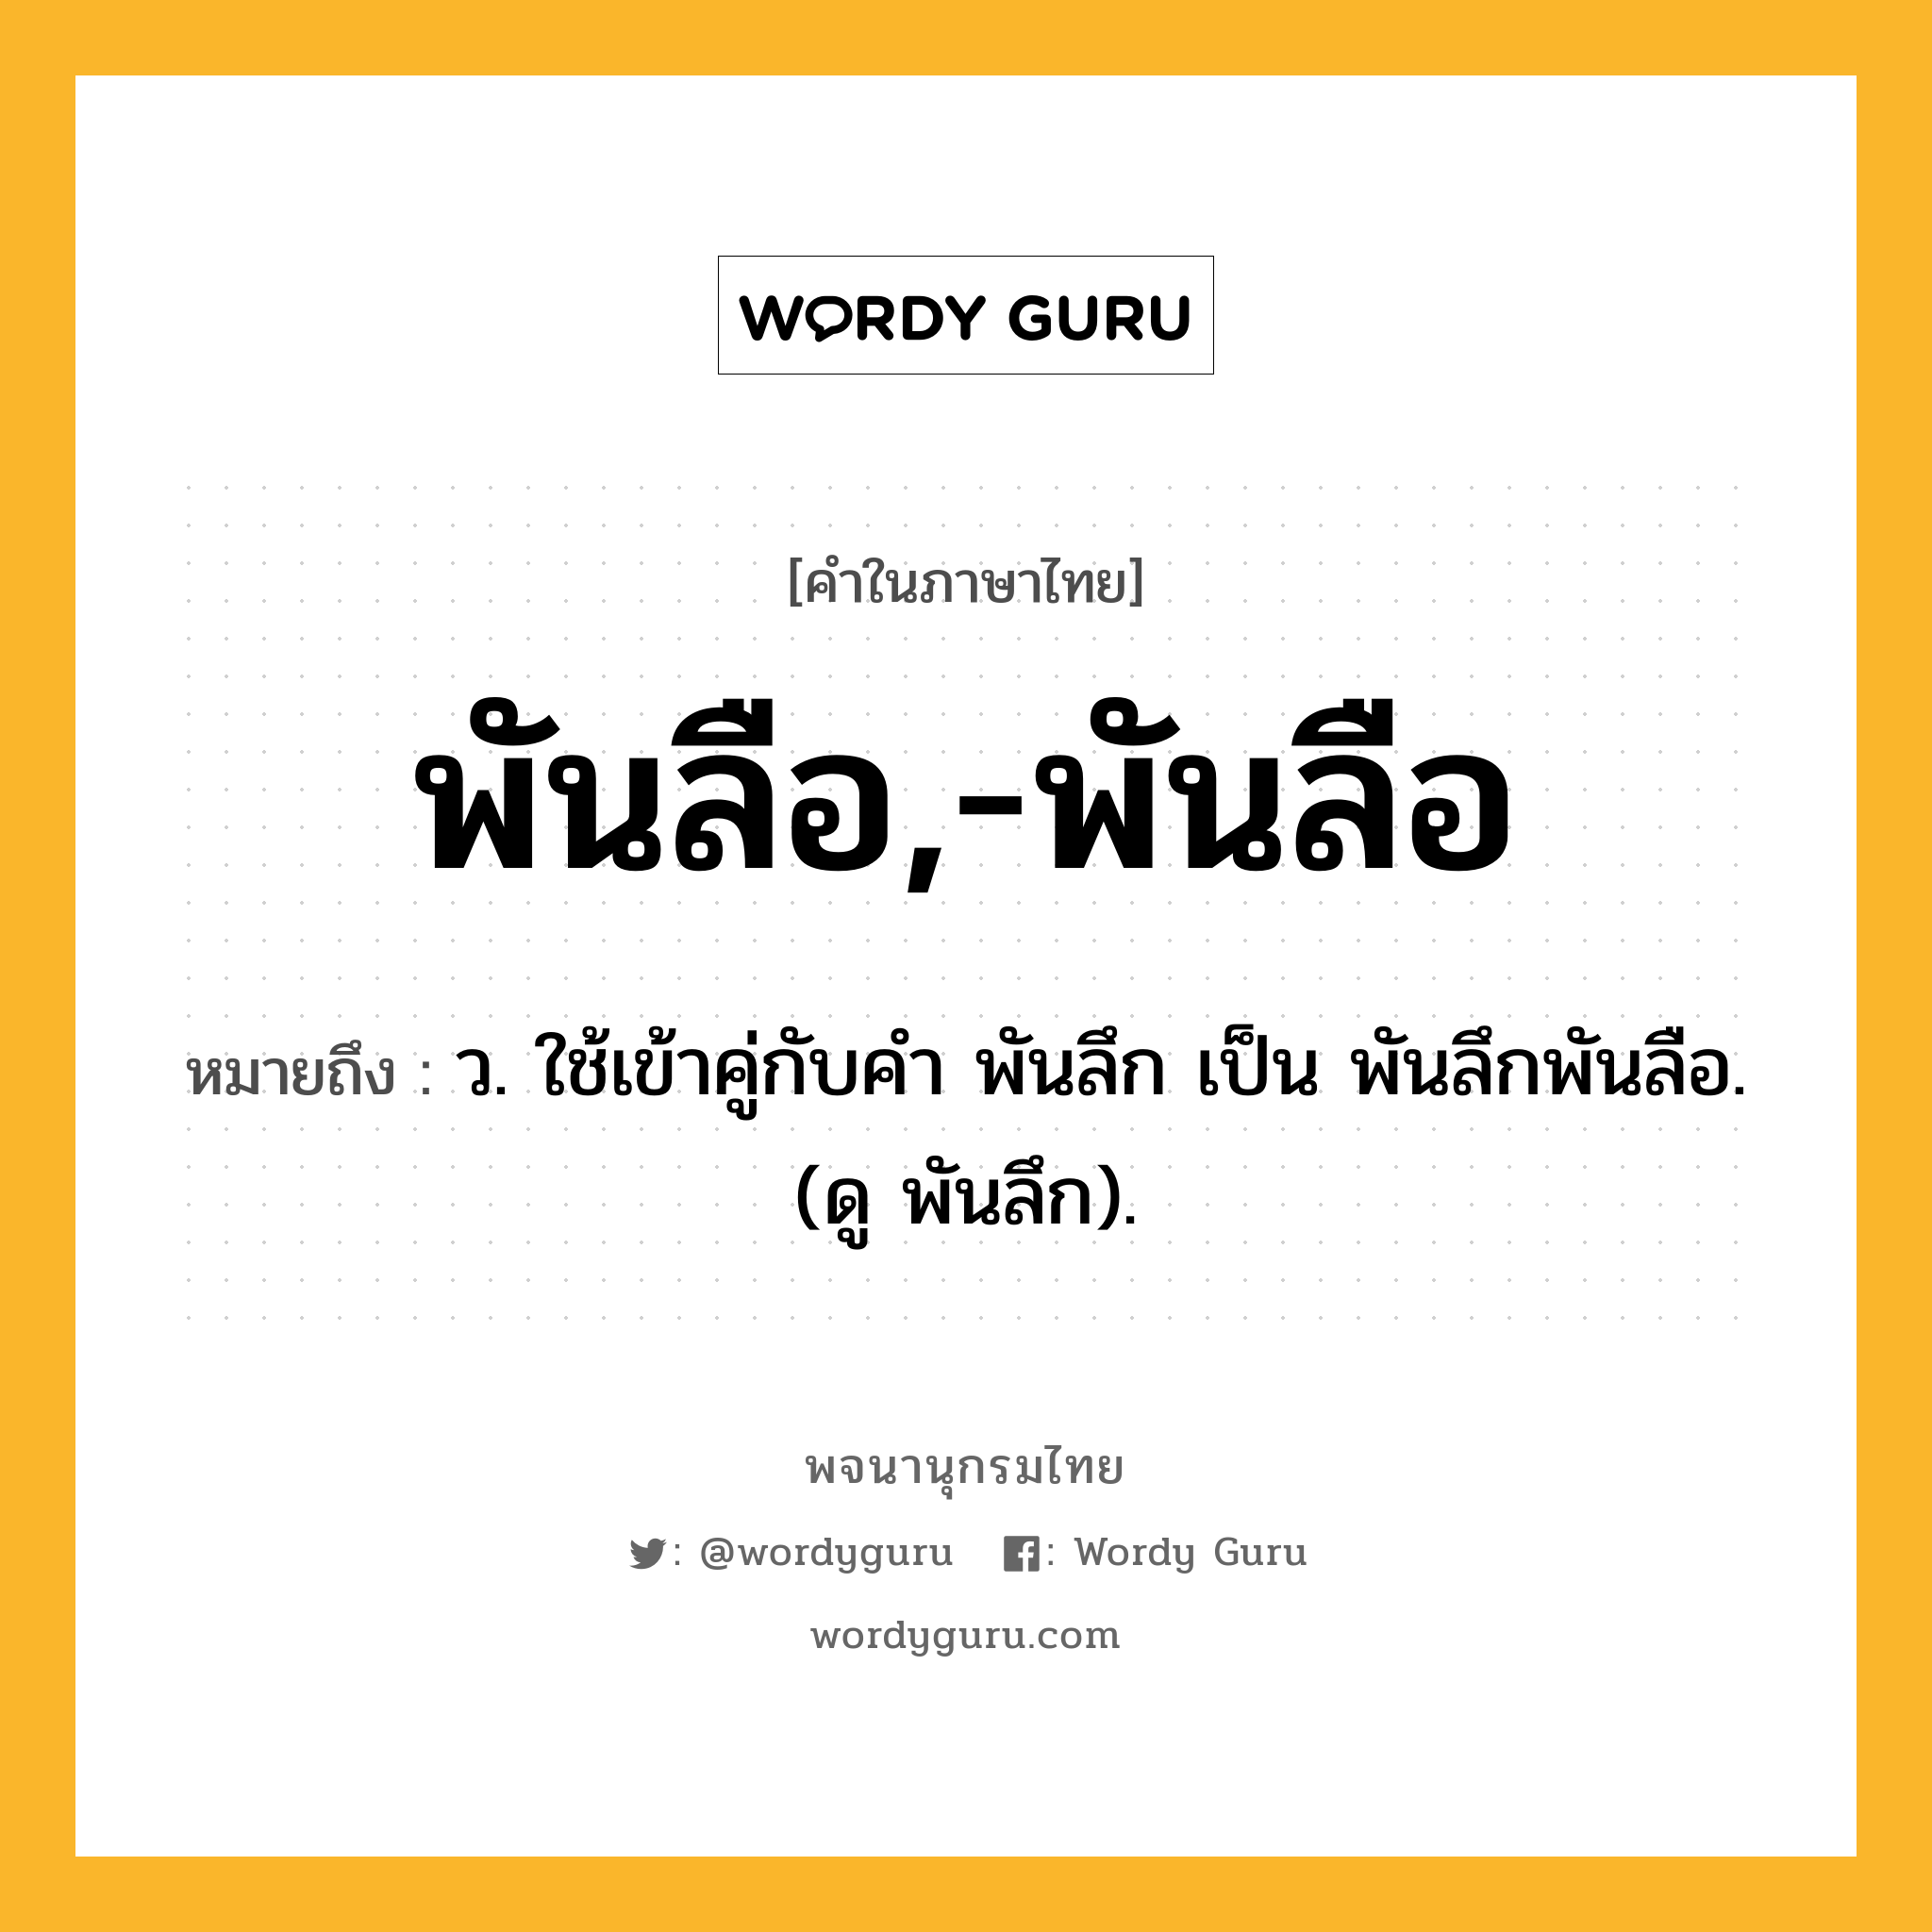 พันลือ,-พันลือ ความหมาย หมายถึงอะไร?, คำในภาษาไทย พันลือ,-พันลือ หมายถึง ว. ใช้เข้าคู่กับคํา พันลึก เป็น พันลึกพันลือ. (ดู พันลึก).